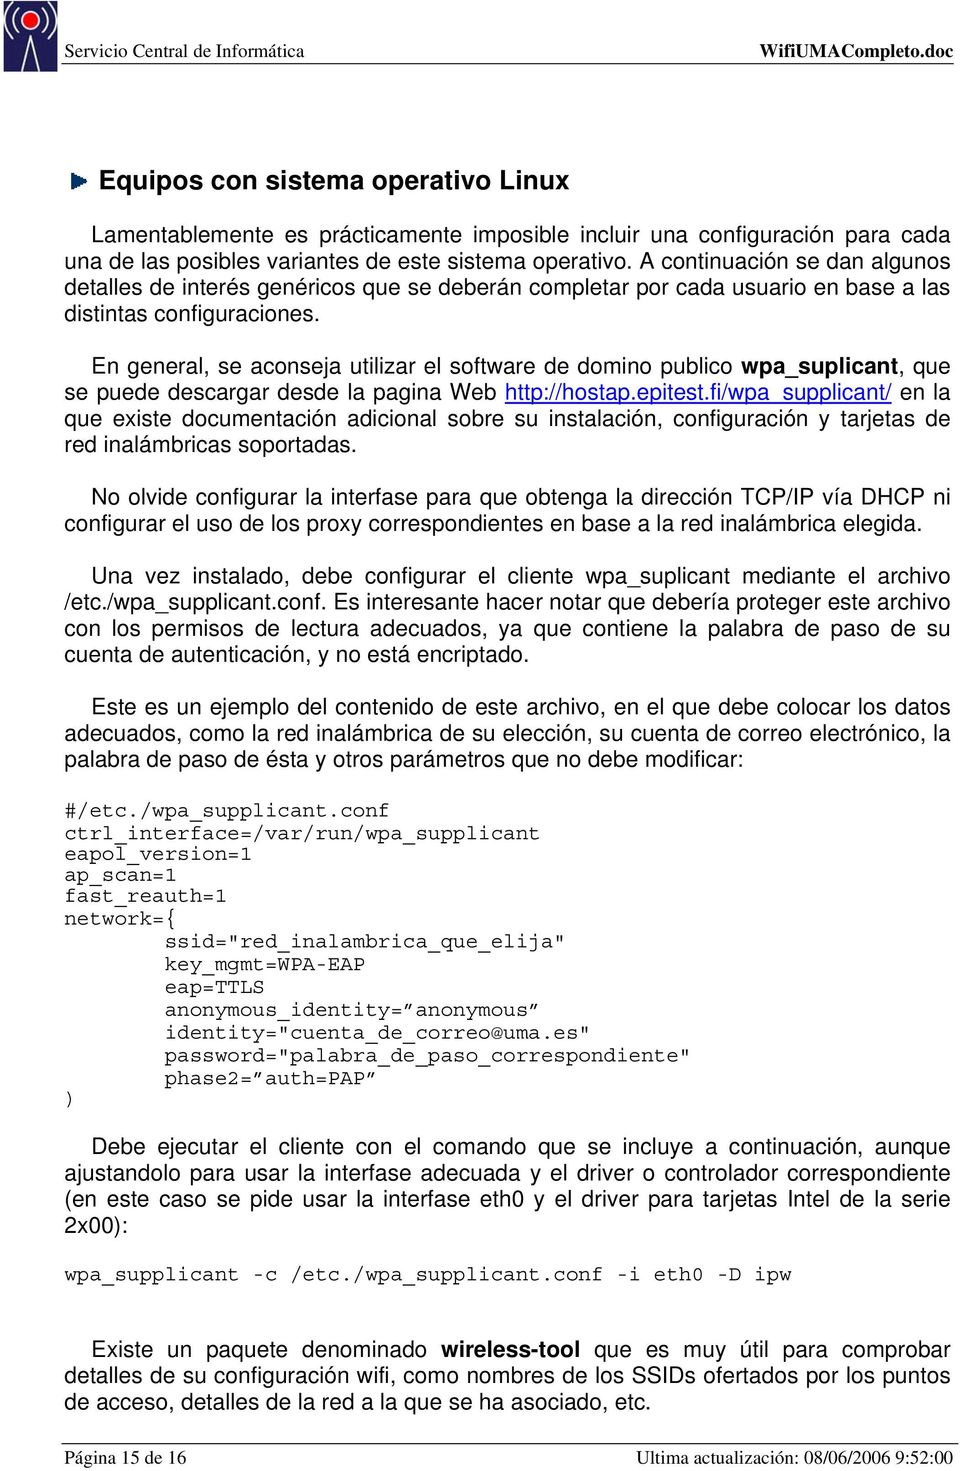 En general, se aconseja utilizar el software de domino publico wpa_suplicant, que se puede descargar desde la pagina Web http://hostap.epitest.